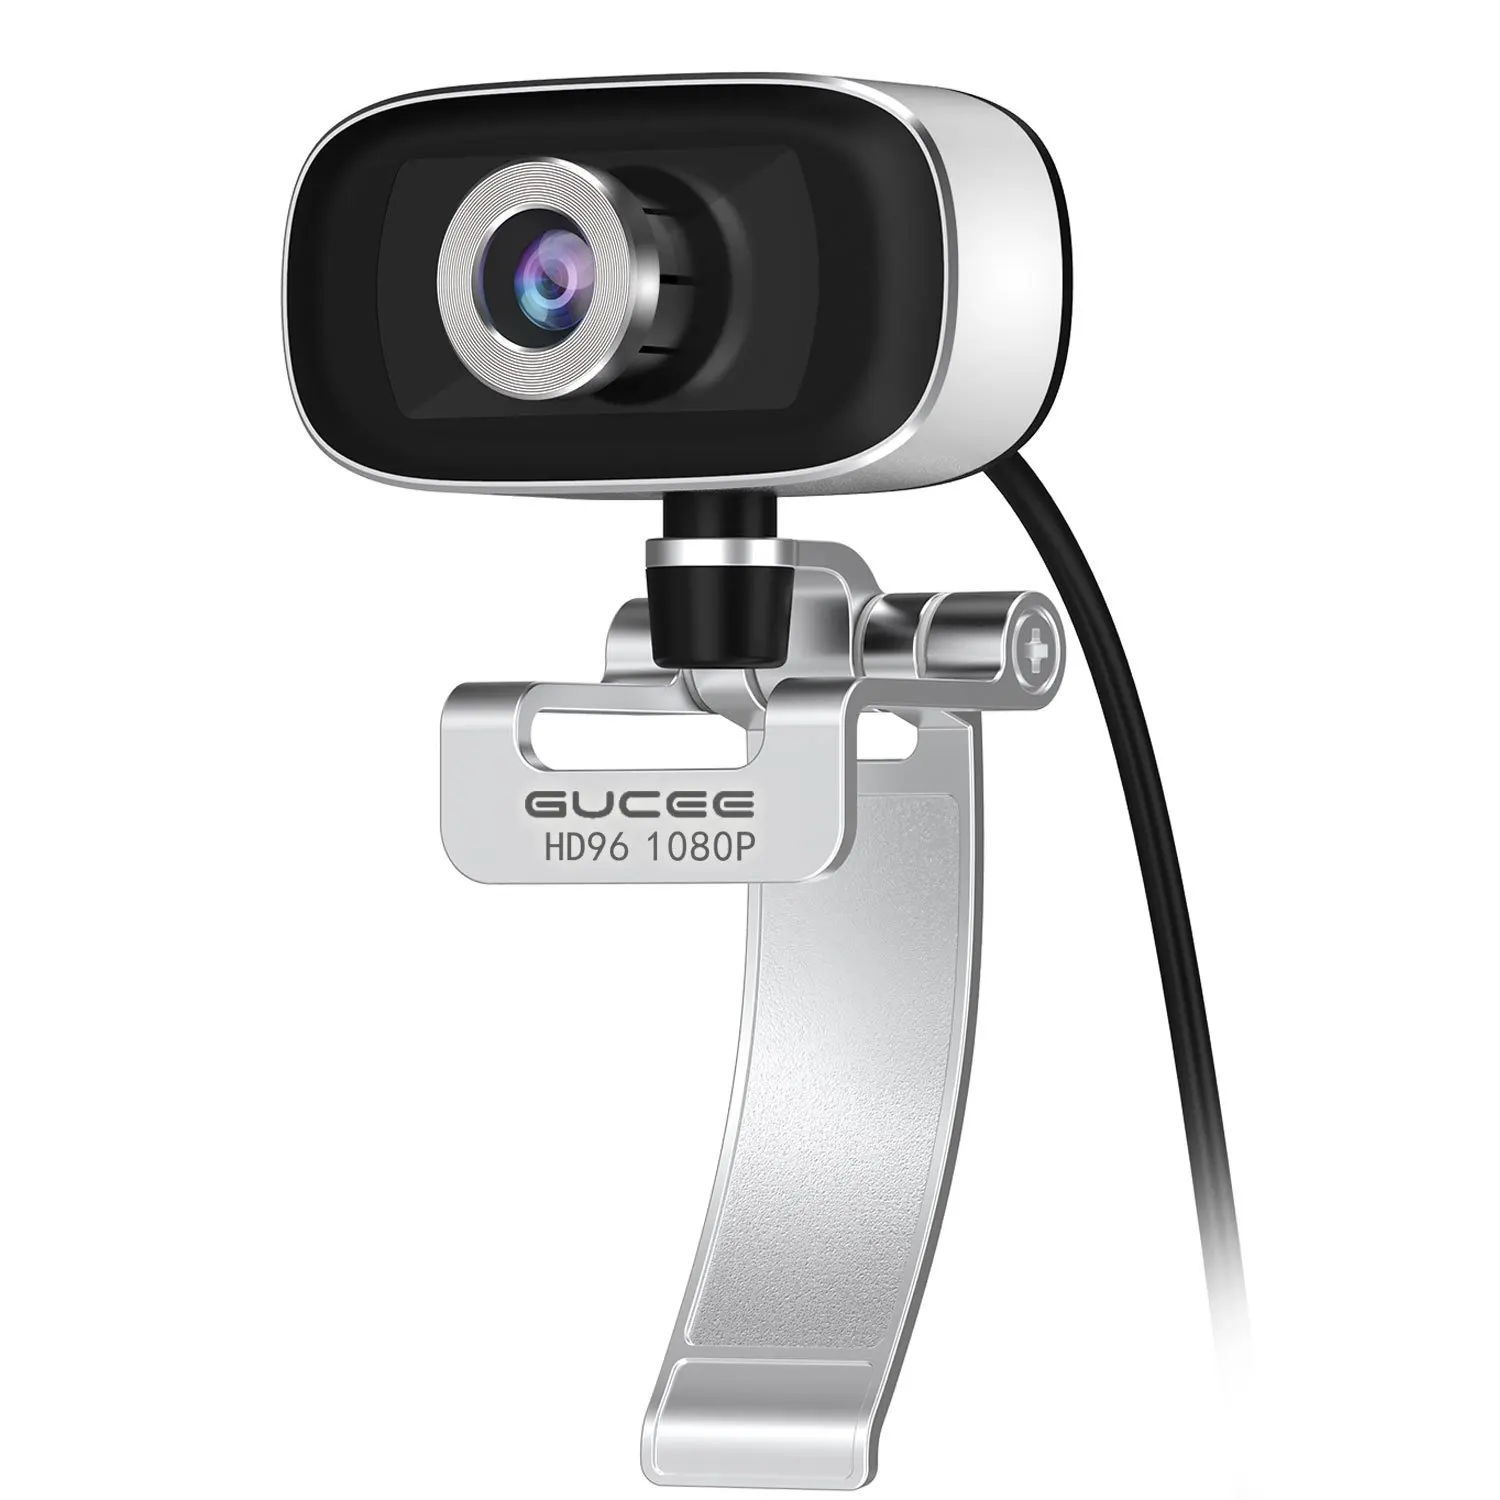 Usb Cameras For Mac